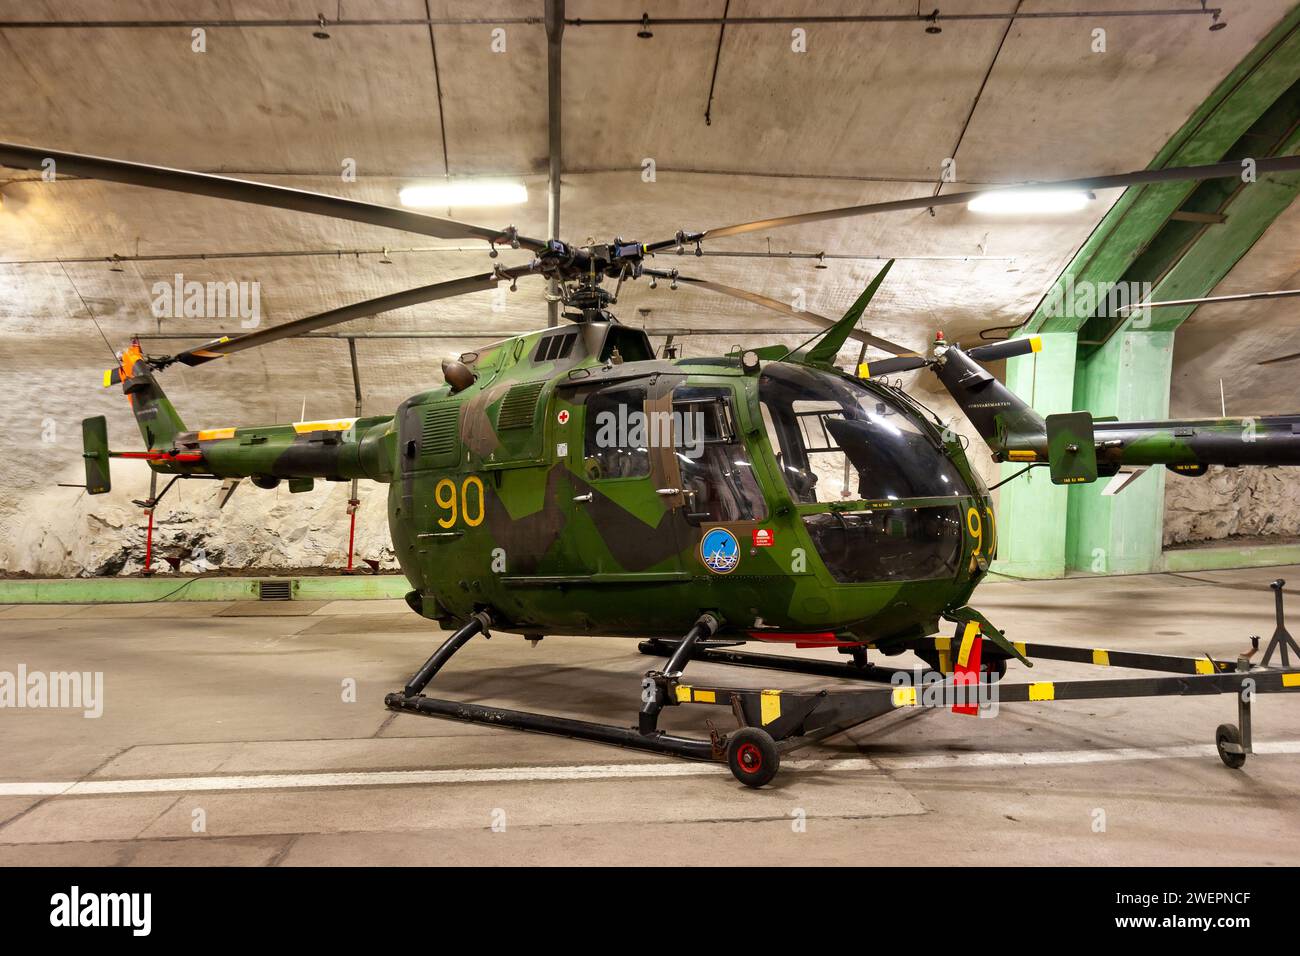 Hélicoptère MBB Bo105CBS (HKP-9a) de l'armée de l'air suédoise à l'intérieur de l'Aeroseum, un bunker déclassifié de l'armée de l'air suédoise taillé dans de la roche solide. 10 juillet 2011 Banque D'Images